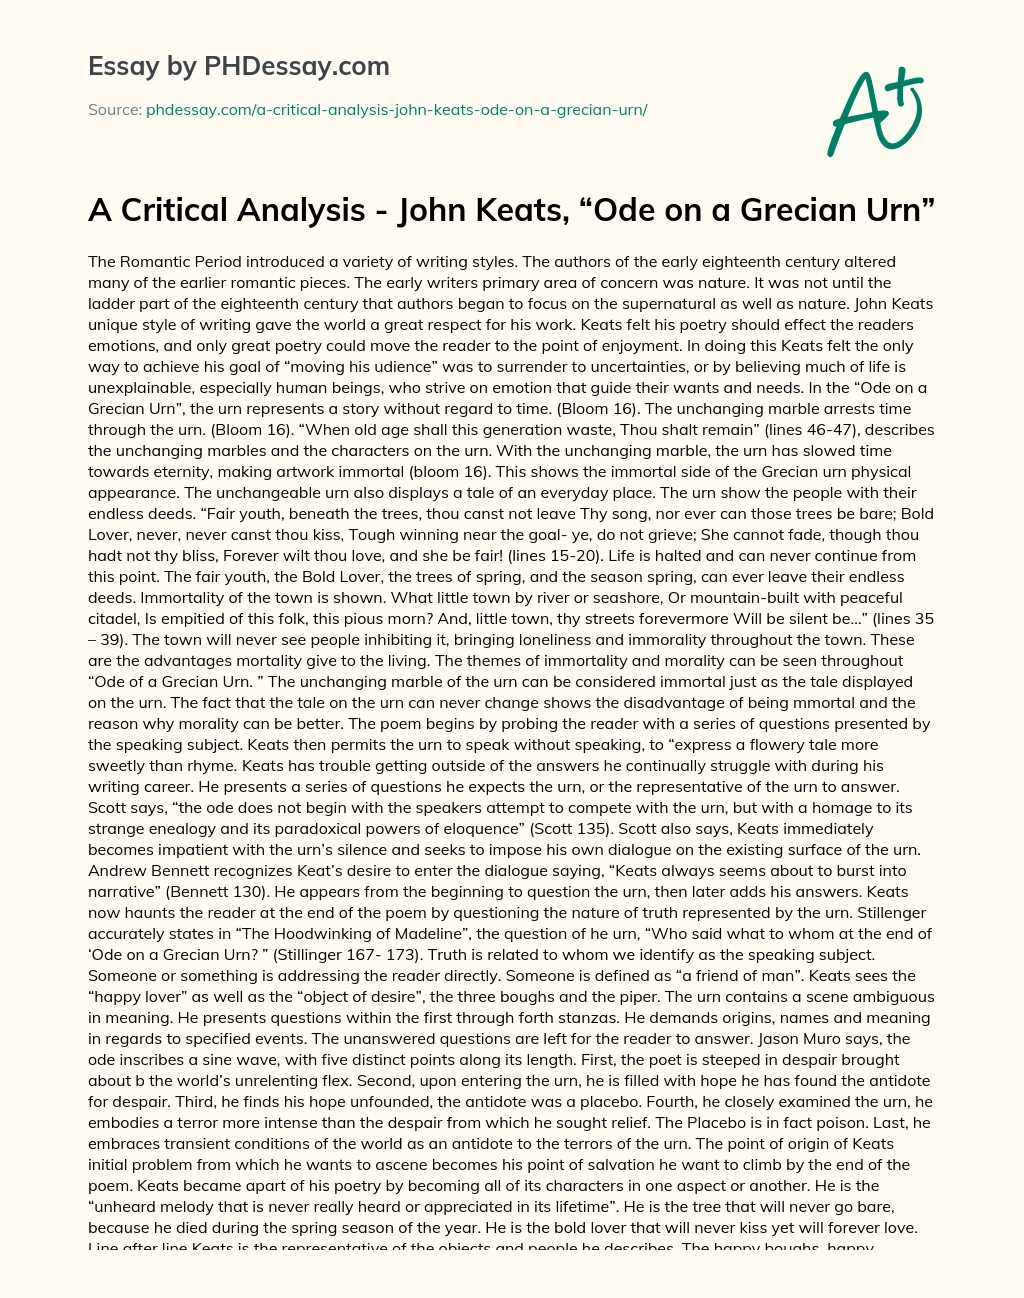 A Critical Analysis – John Keats, “Ode on a Grecian Urn” essay